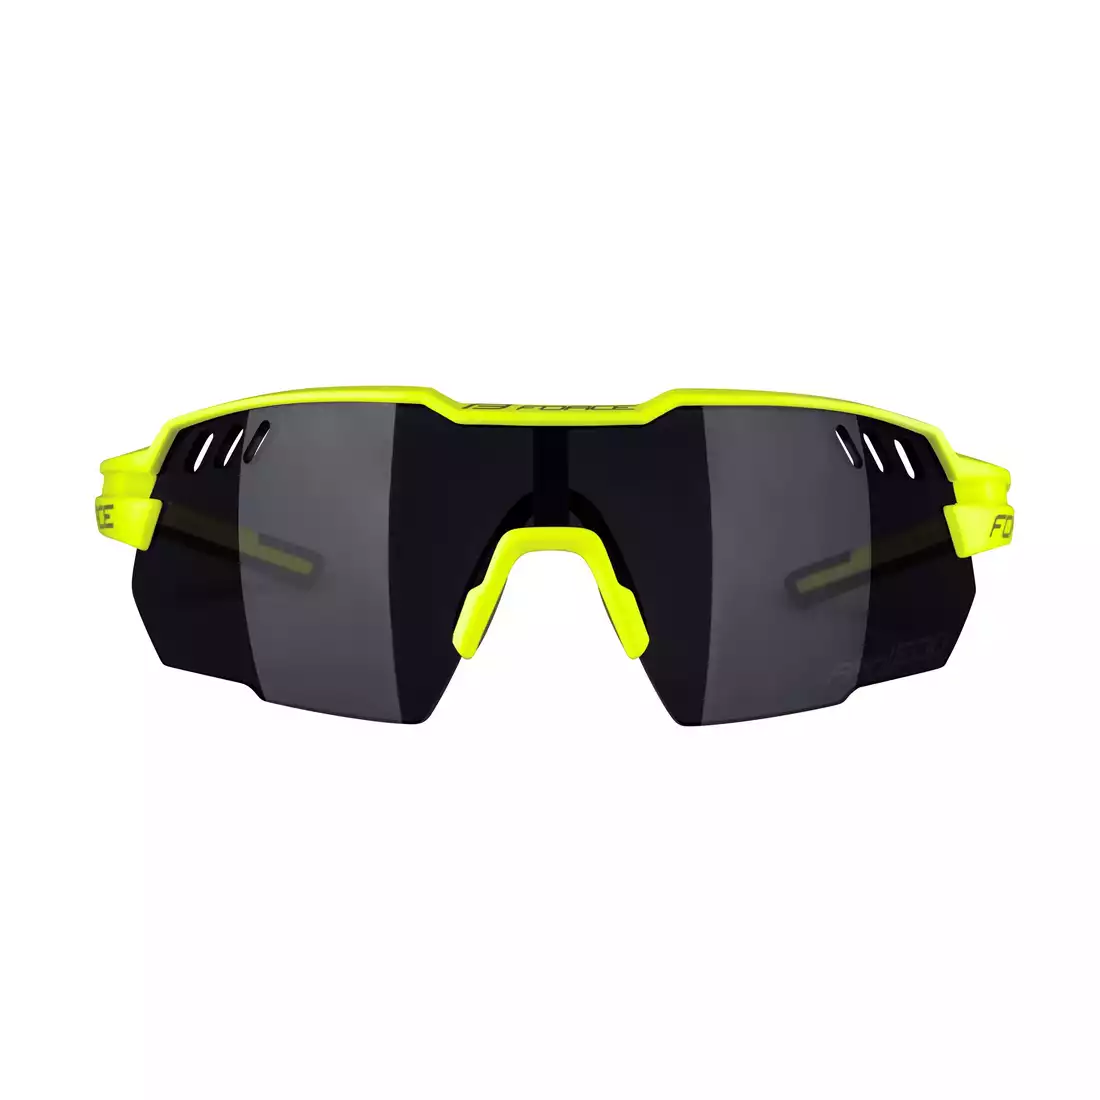 FORCE okulary przeciwsłoneczne AMOLEDO, fluo-szare, czarne szkła 910851